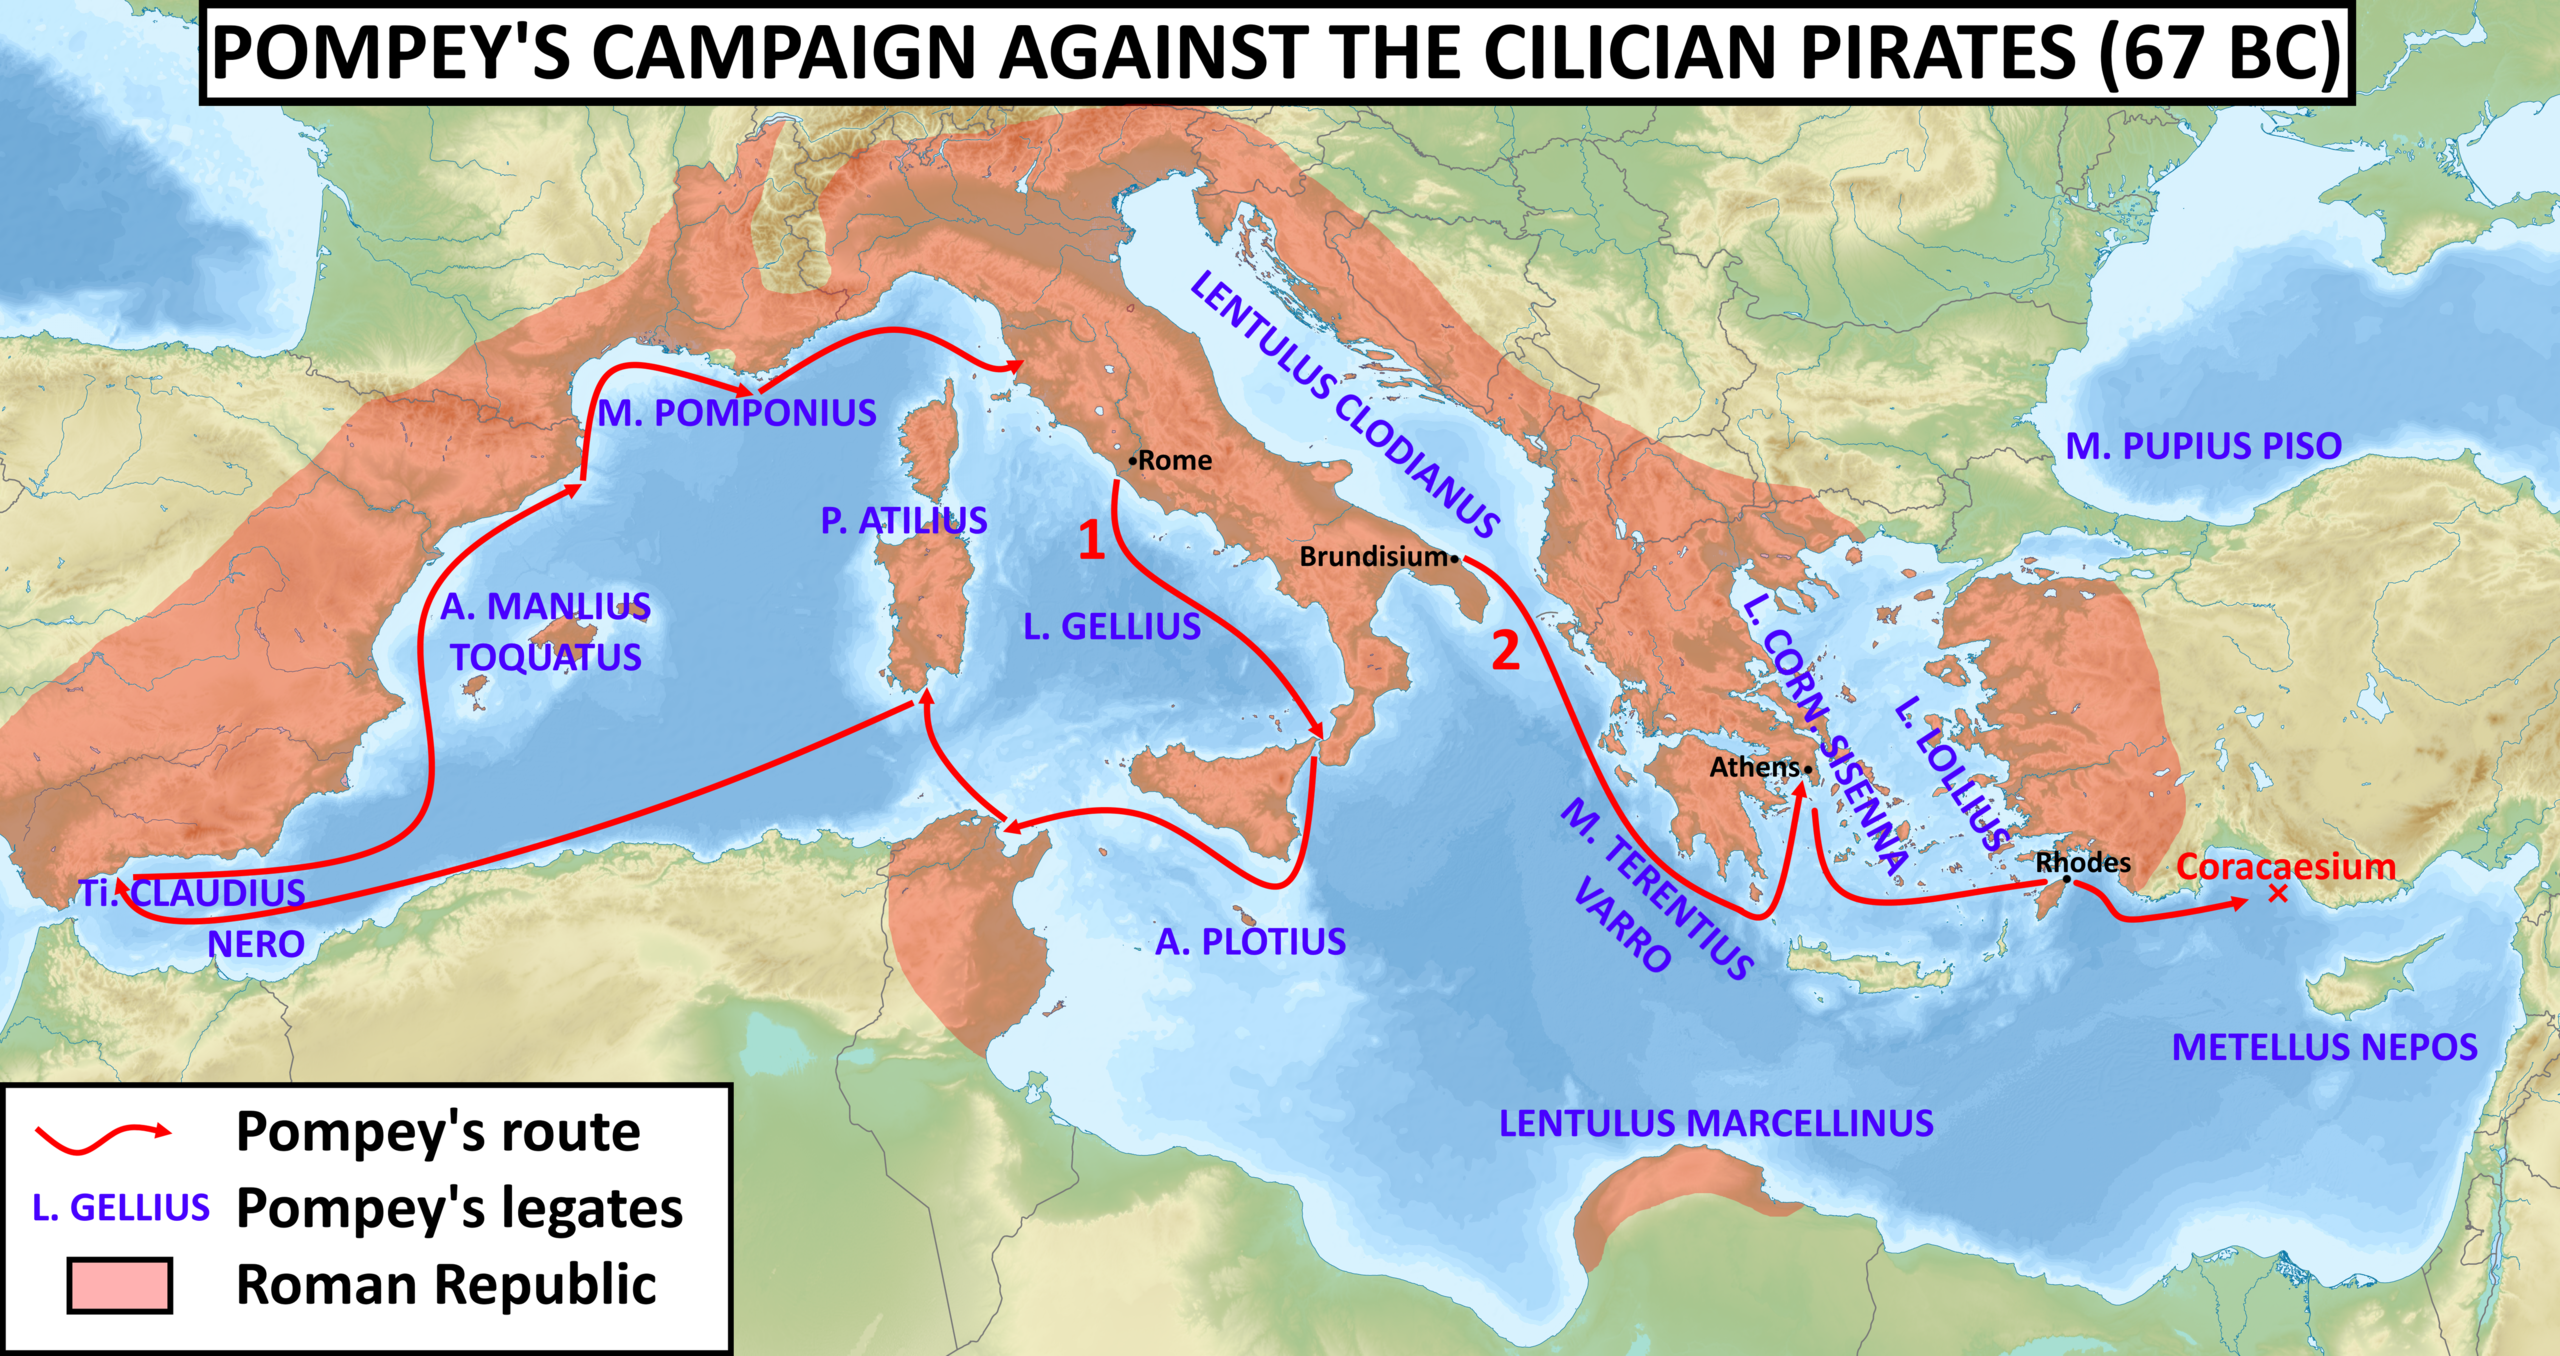 Julius Caesar's map of Pompey's campaign.